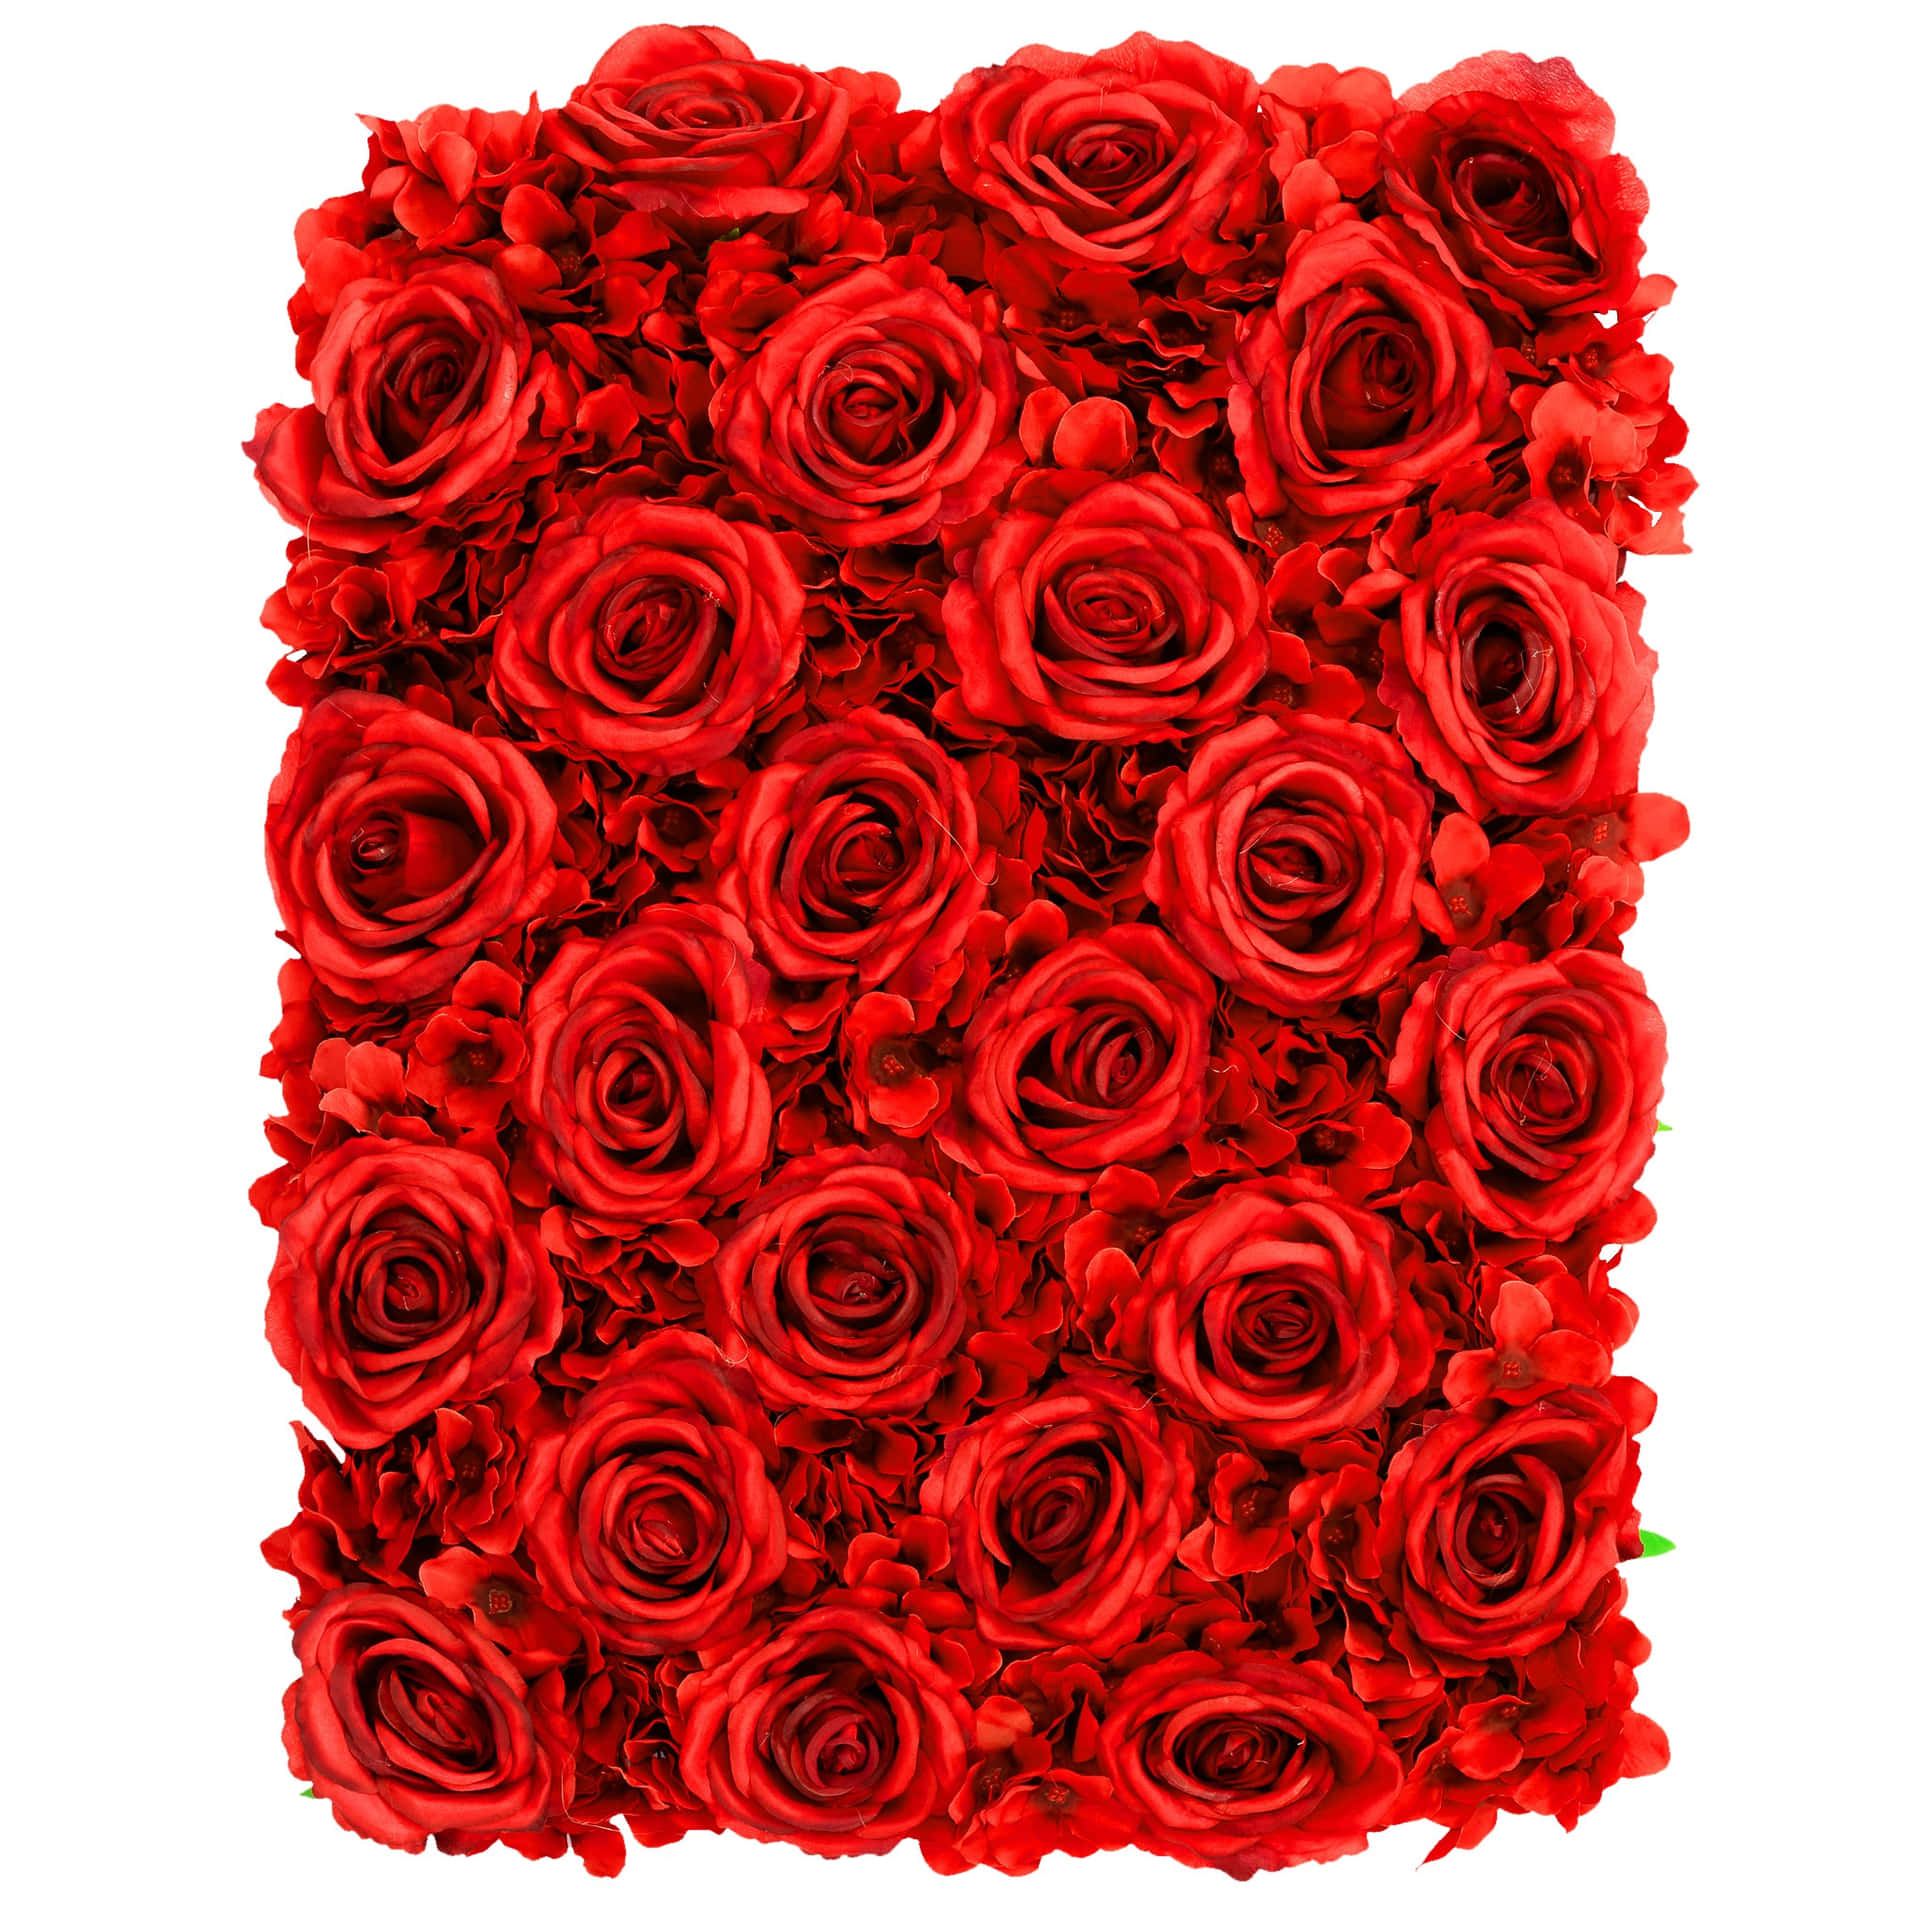 Vieleintensive Rote Rosen Mit Wunderschönen Details.